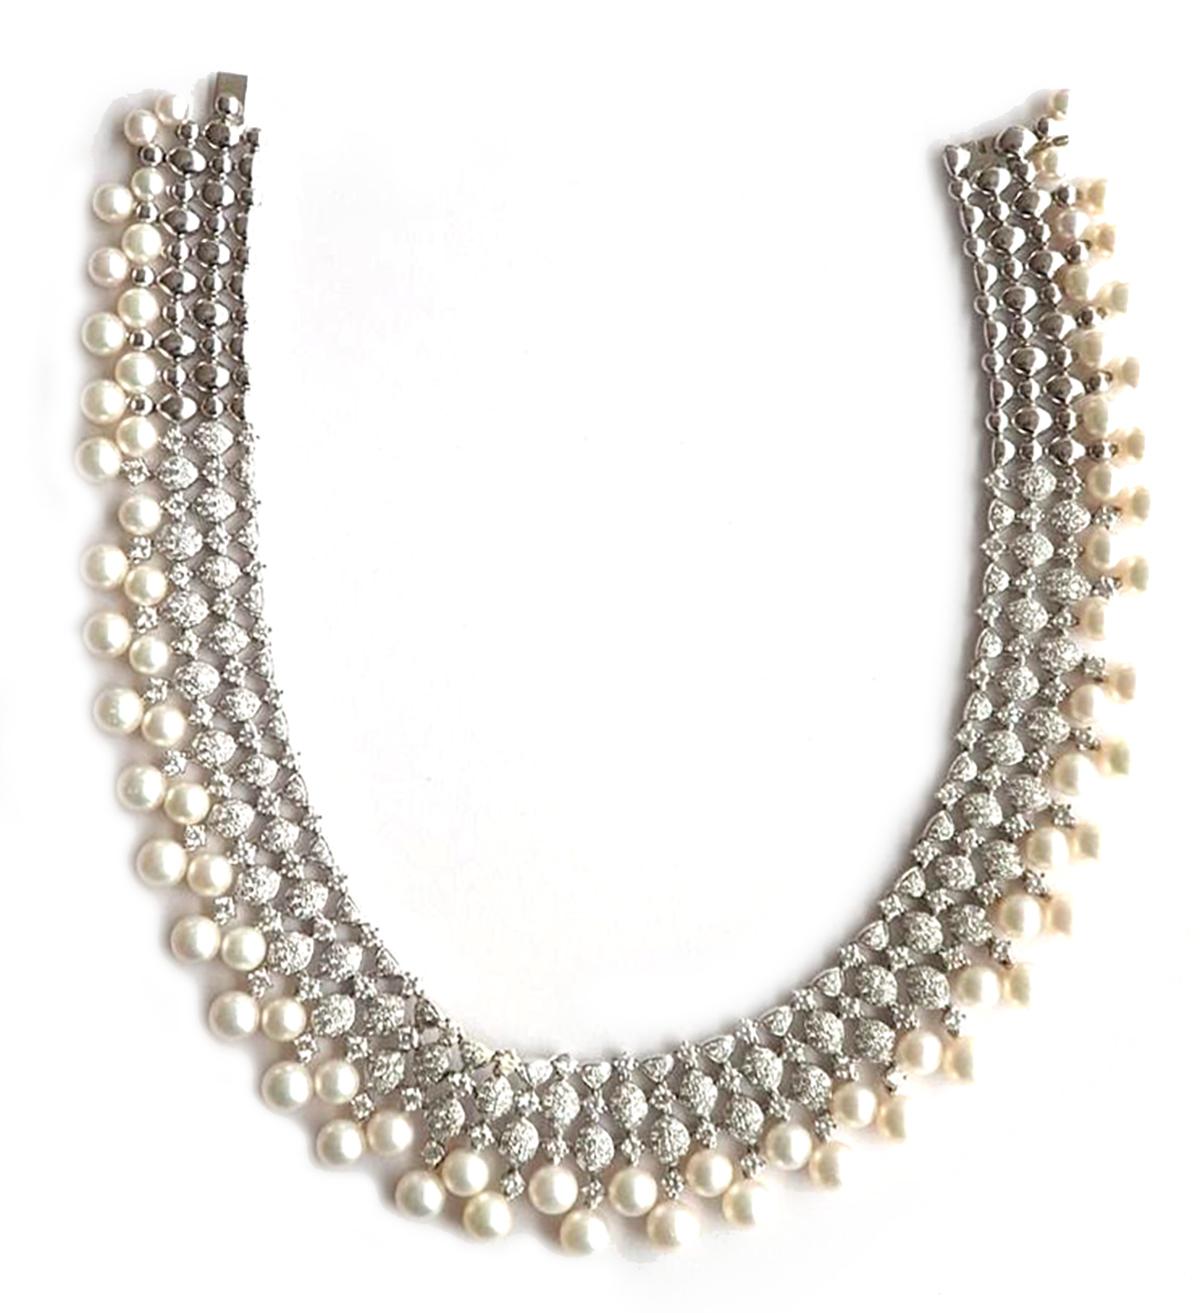 Diese Zuchtperlen- und Diamant-Halskette aus 18-karätigem Gold ist ein luxuriöses und atemberaubendes Schmuckstück, das ein einzigartiges und kompliziertes Design aus Perlen und Diamanten aufweist. Die Perlen sind von hoher Qualität und werden